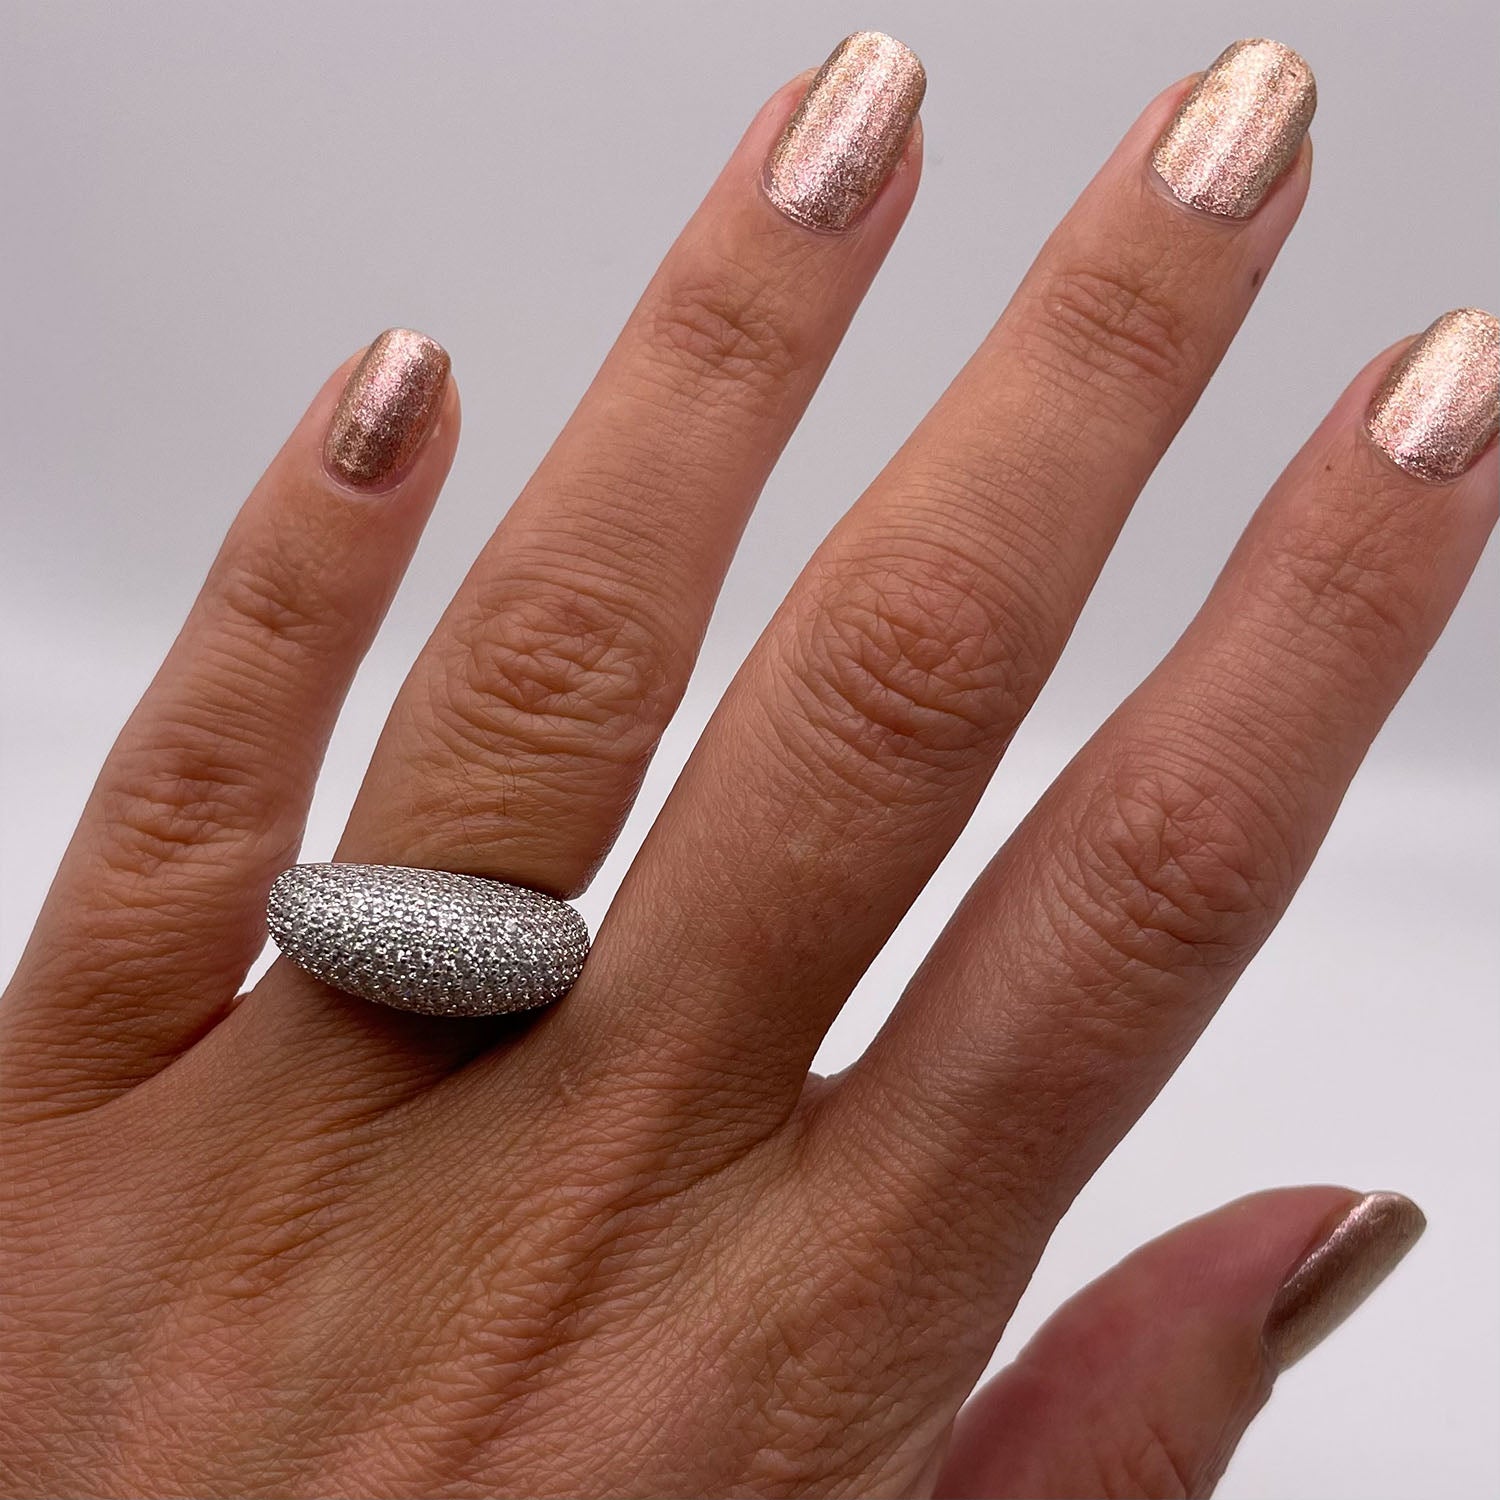 Amara Round CZ Diamond Ring, Silver - Zahra Jewelry